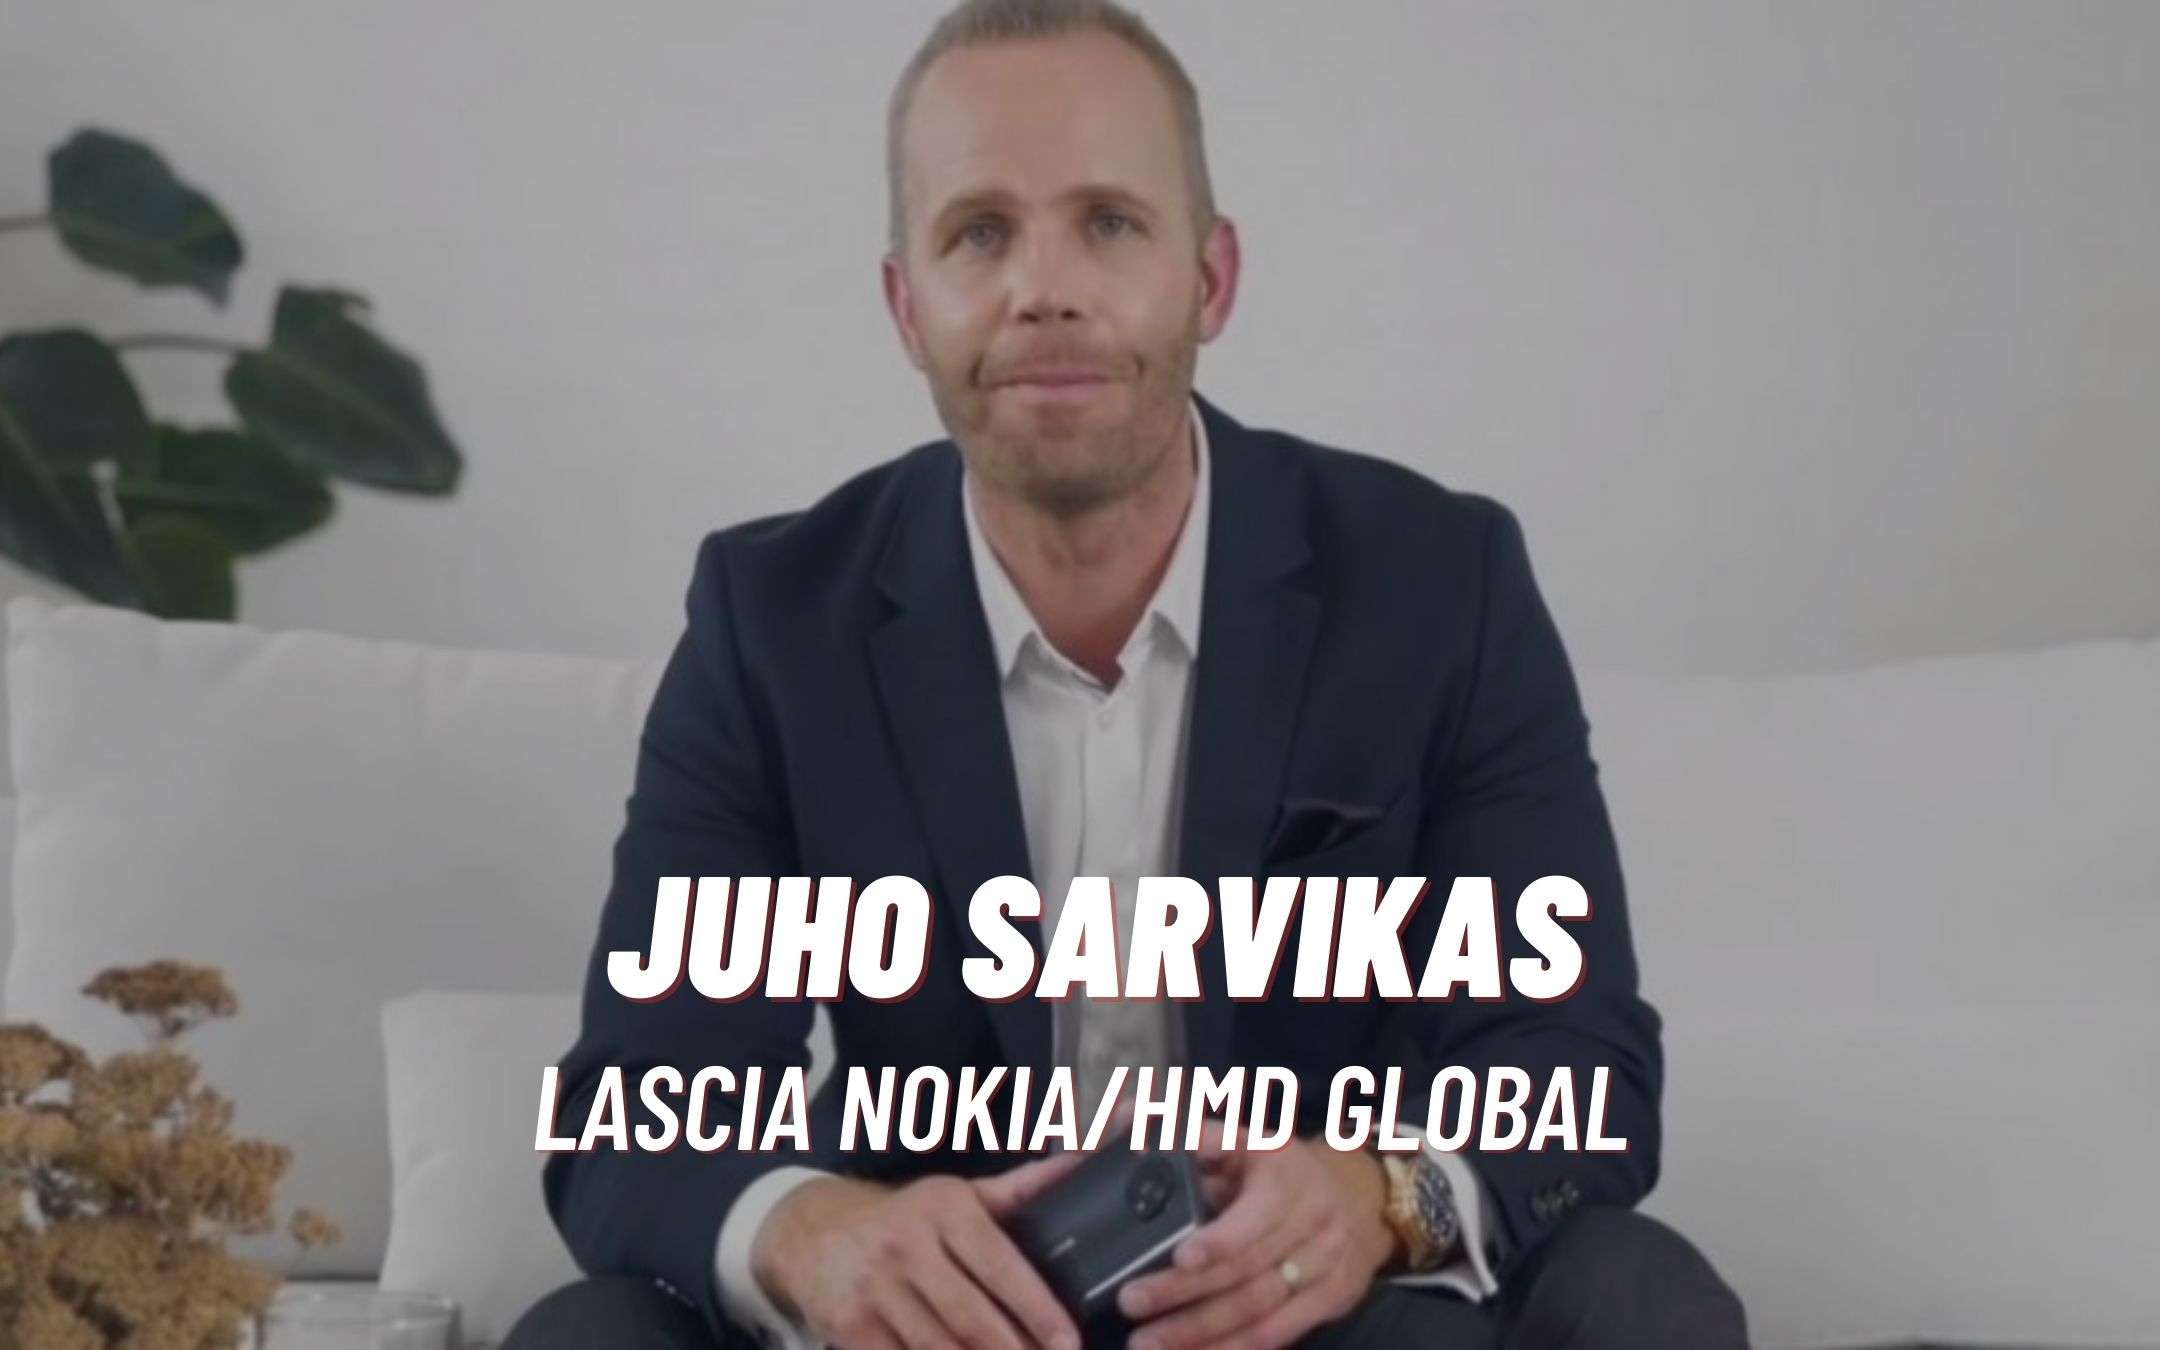 Il CEO di Nokia Mobile lascia l'azienda (UFFICIALE)